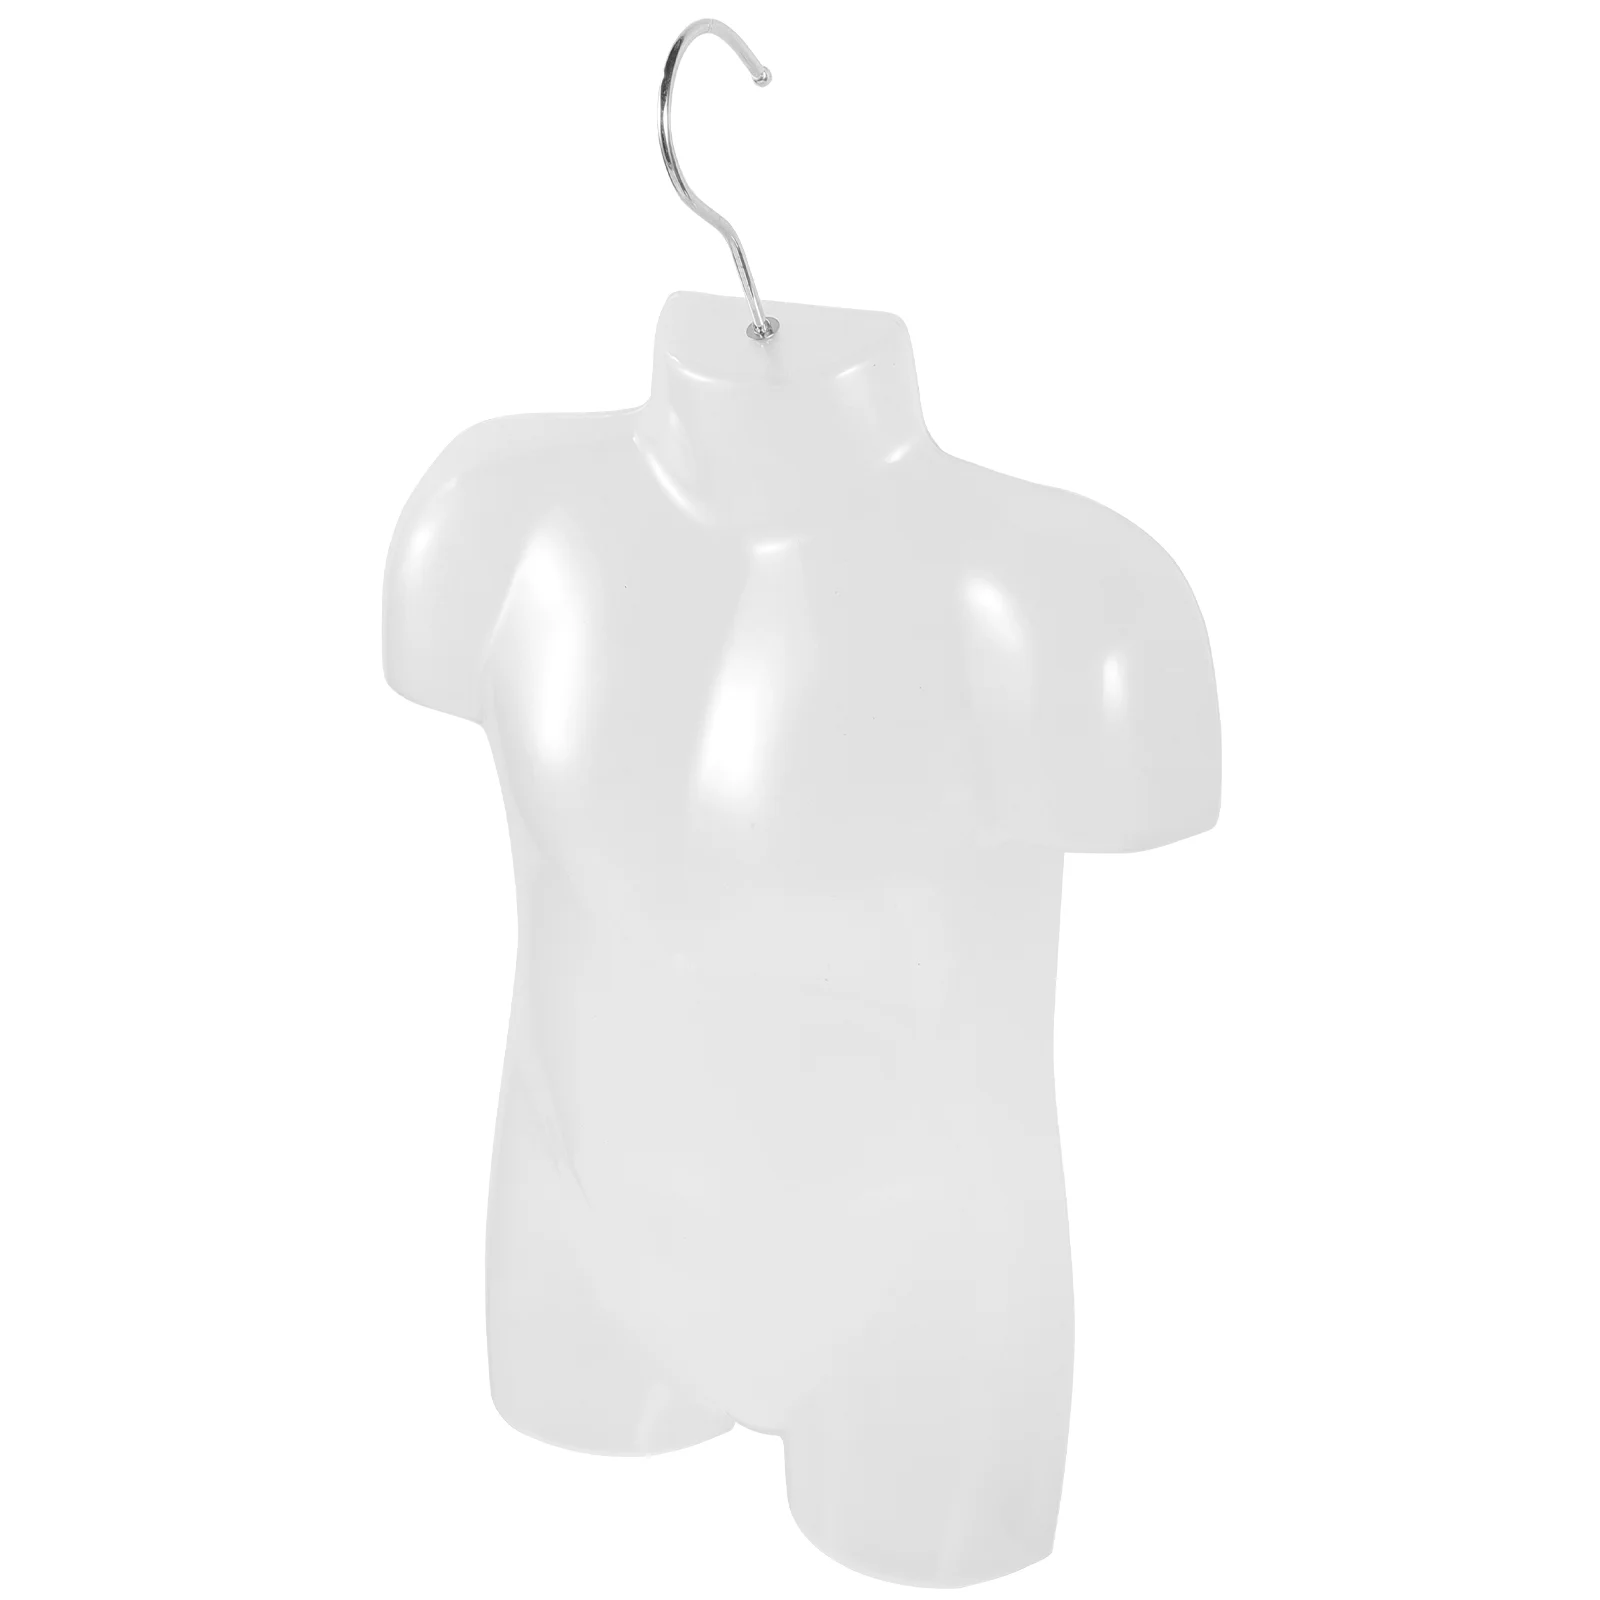 Детская пластиковая вешалка для тела с манекеном, детская одежда, модель человека, вешалки для детского магазина, подвесные трехмерные вешалки для малышей